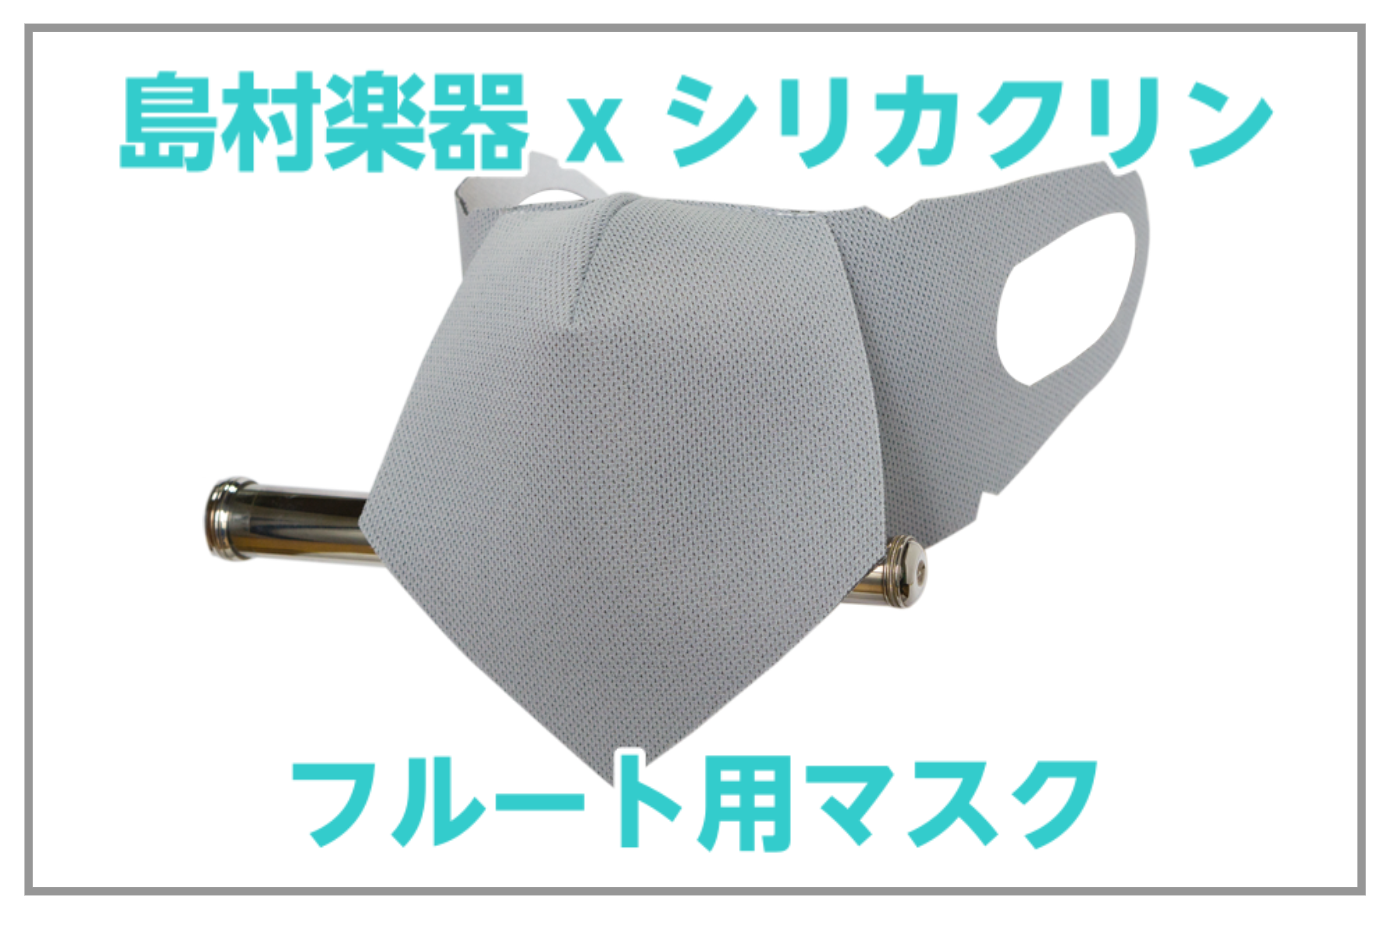 【入荷！】島村楽器xシリカクリン ® フルート用マスク発売!!